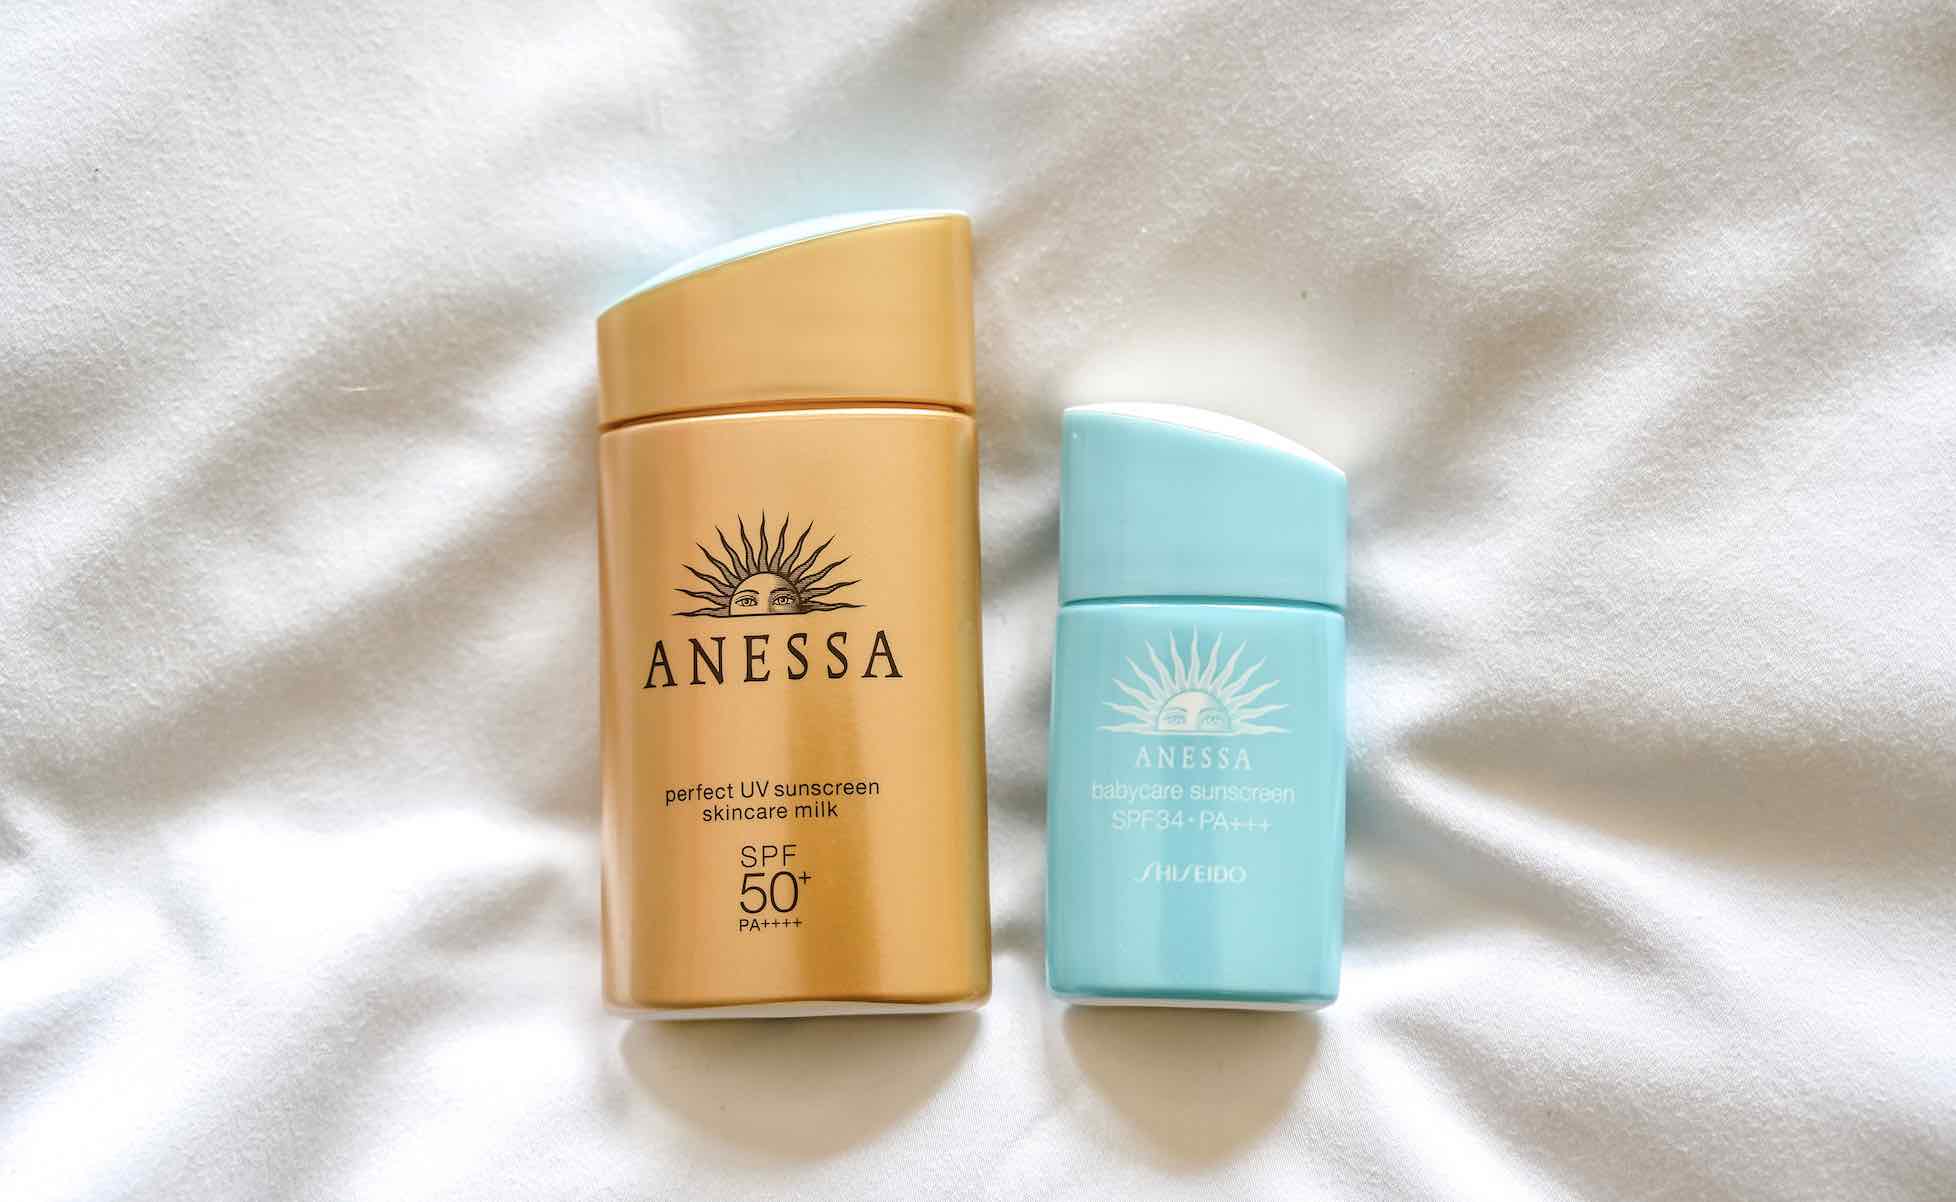 Kem chống nắng vô cùng quan trọng đối với làn da của bạn trong những ngày nắng nóng. Với sản phẩm của chúng tôi, bạn sẽ không chỉ được bảo vệ làn da một cách toàn diện mà còn thực sự được hưởng một làn da mịn màng và đẹp tự nhiên.